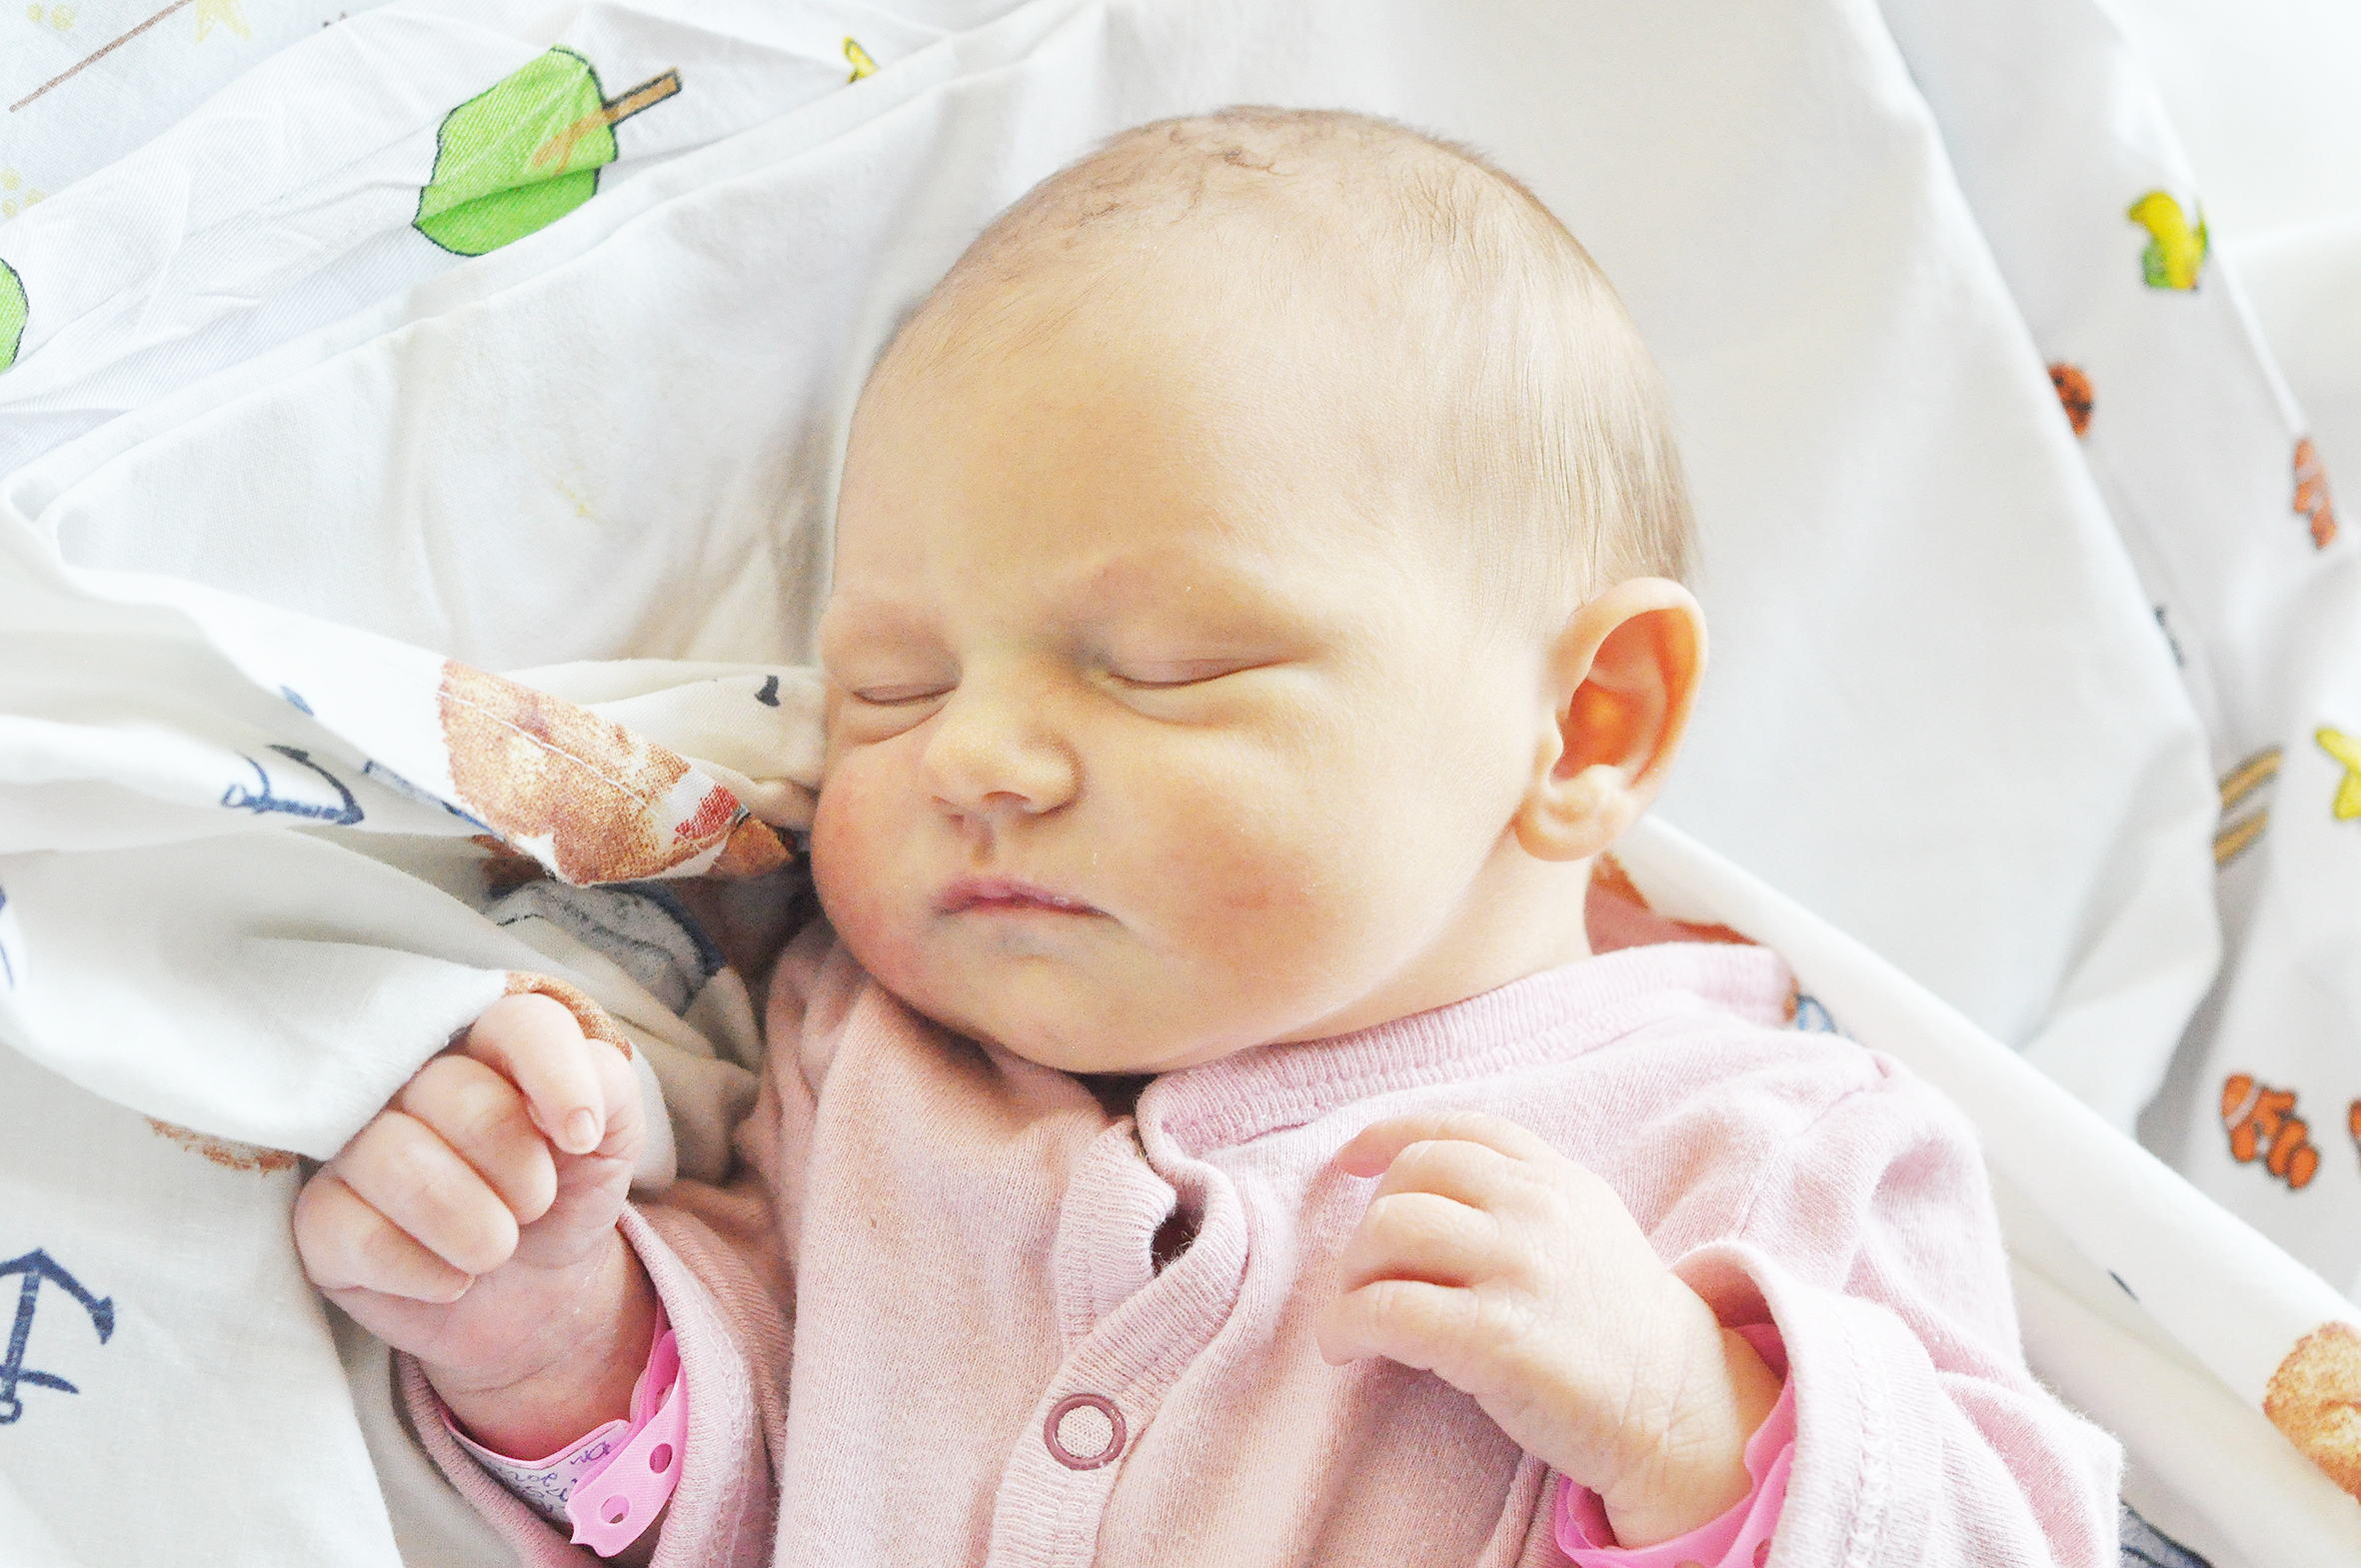 Samanta Gąska to córeczka Pauliny i Tobiasza urodzona 7 listopada o 10.35. Ważyła 3060 g i mierzyła 54 cm. Rodzina mieszka w Raciborzu.